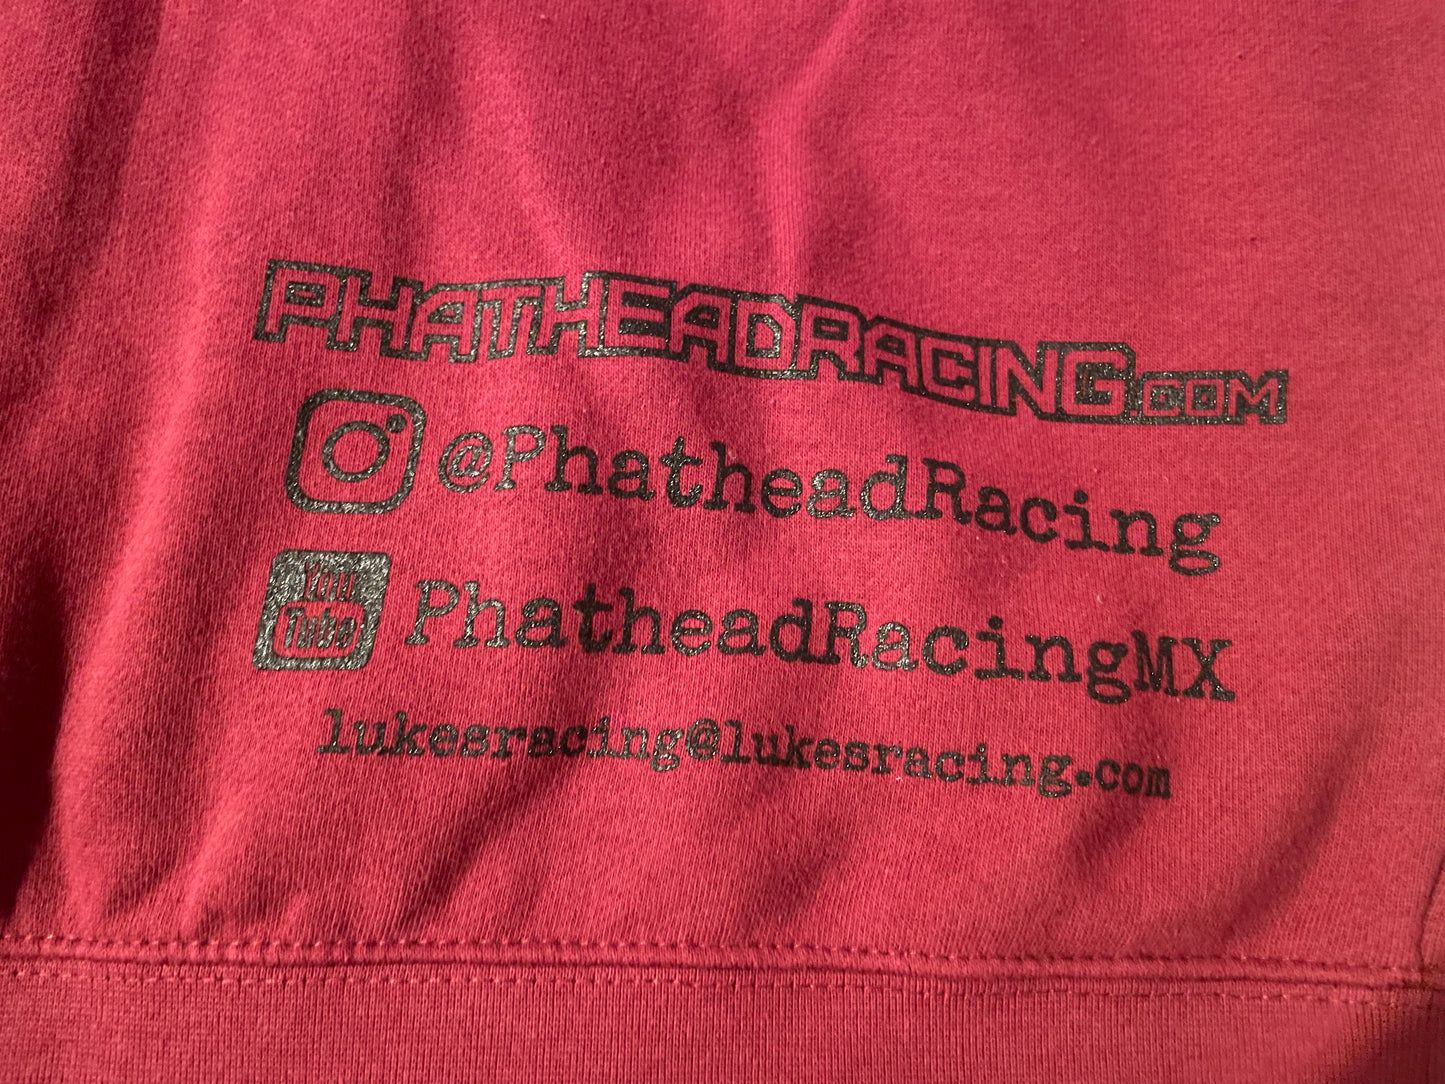 Phathead Racing Hoodie - Full Zip logo Jacket  - Burgundy Red